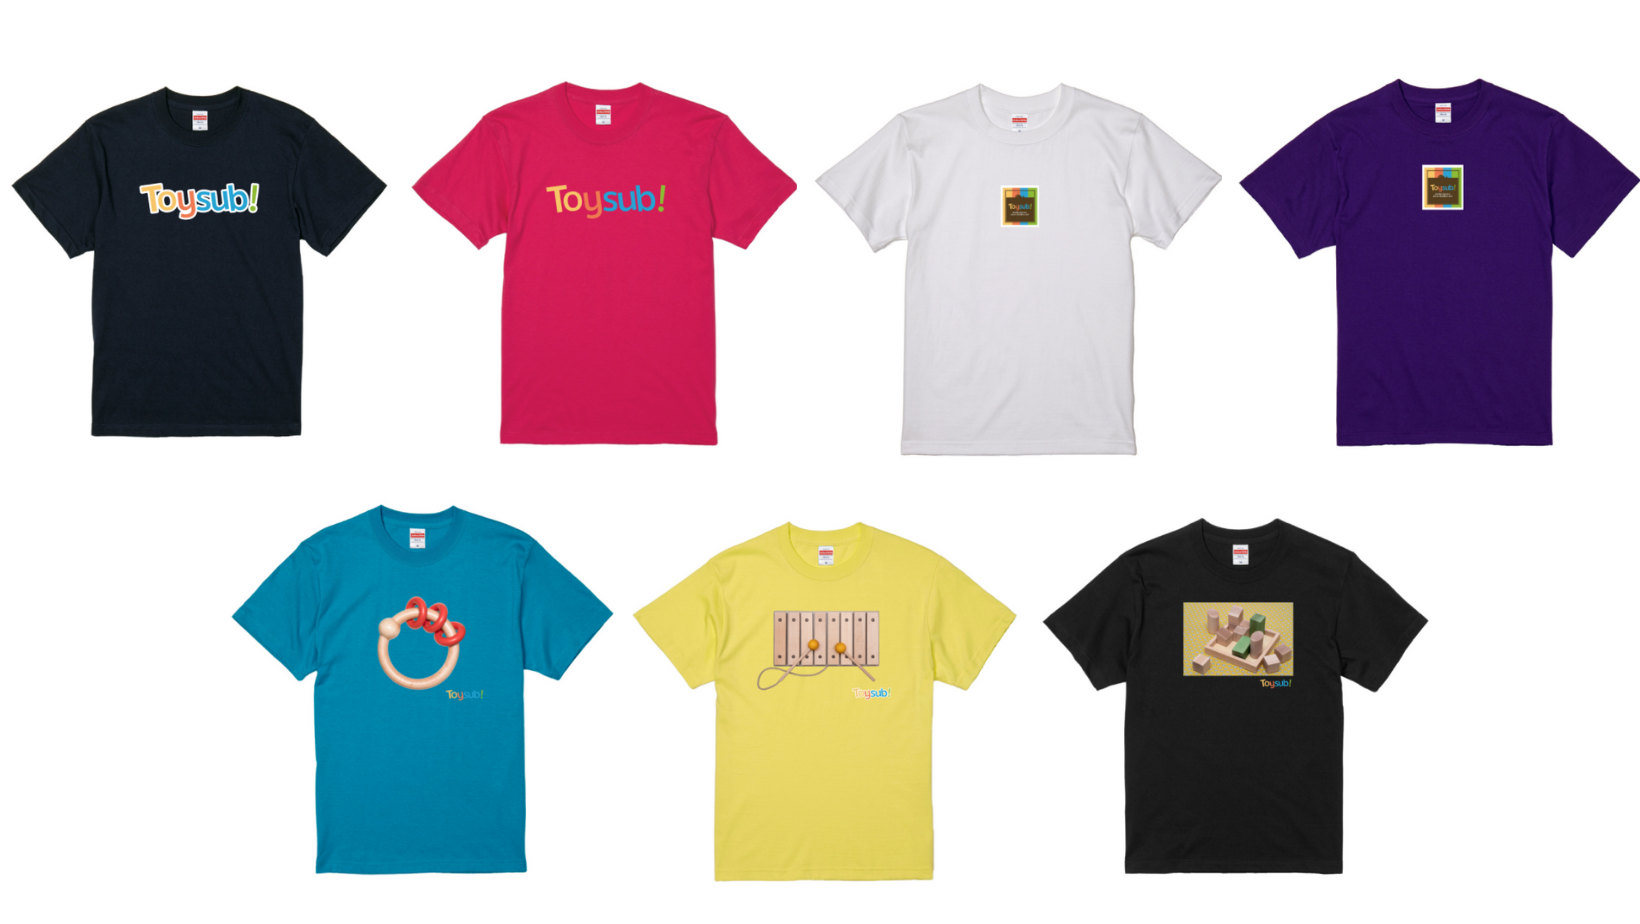 2021年夏には多様なメンバーの好みに合わせて7種類のTシャツを制作